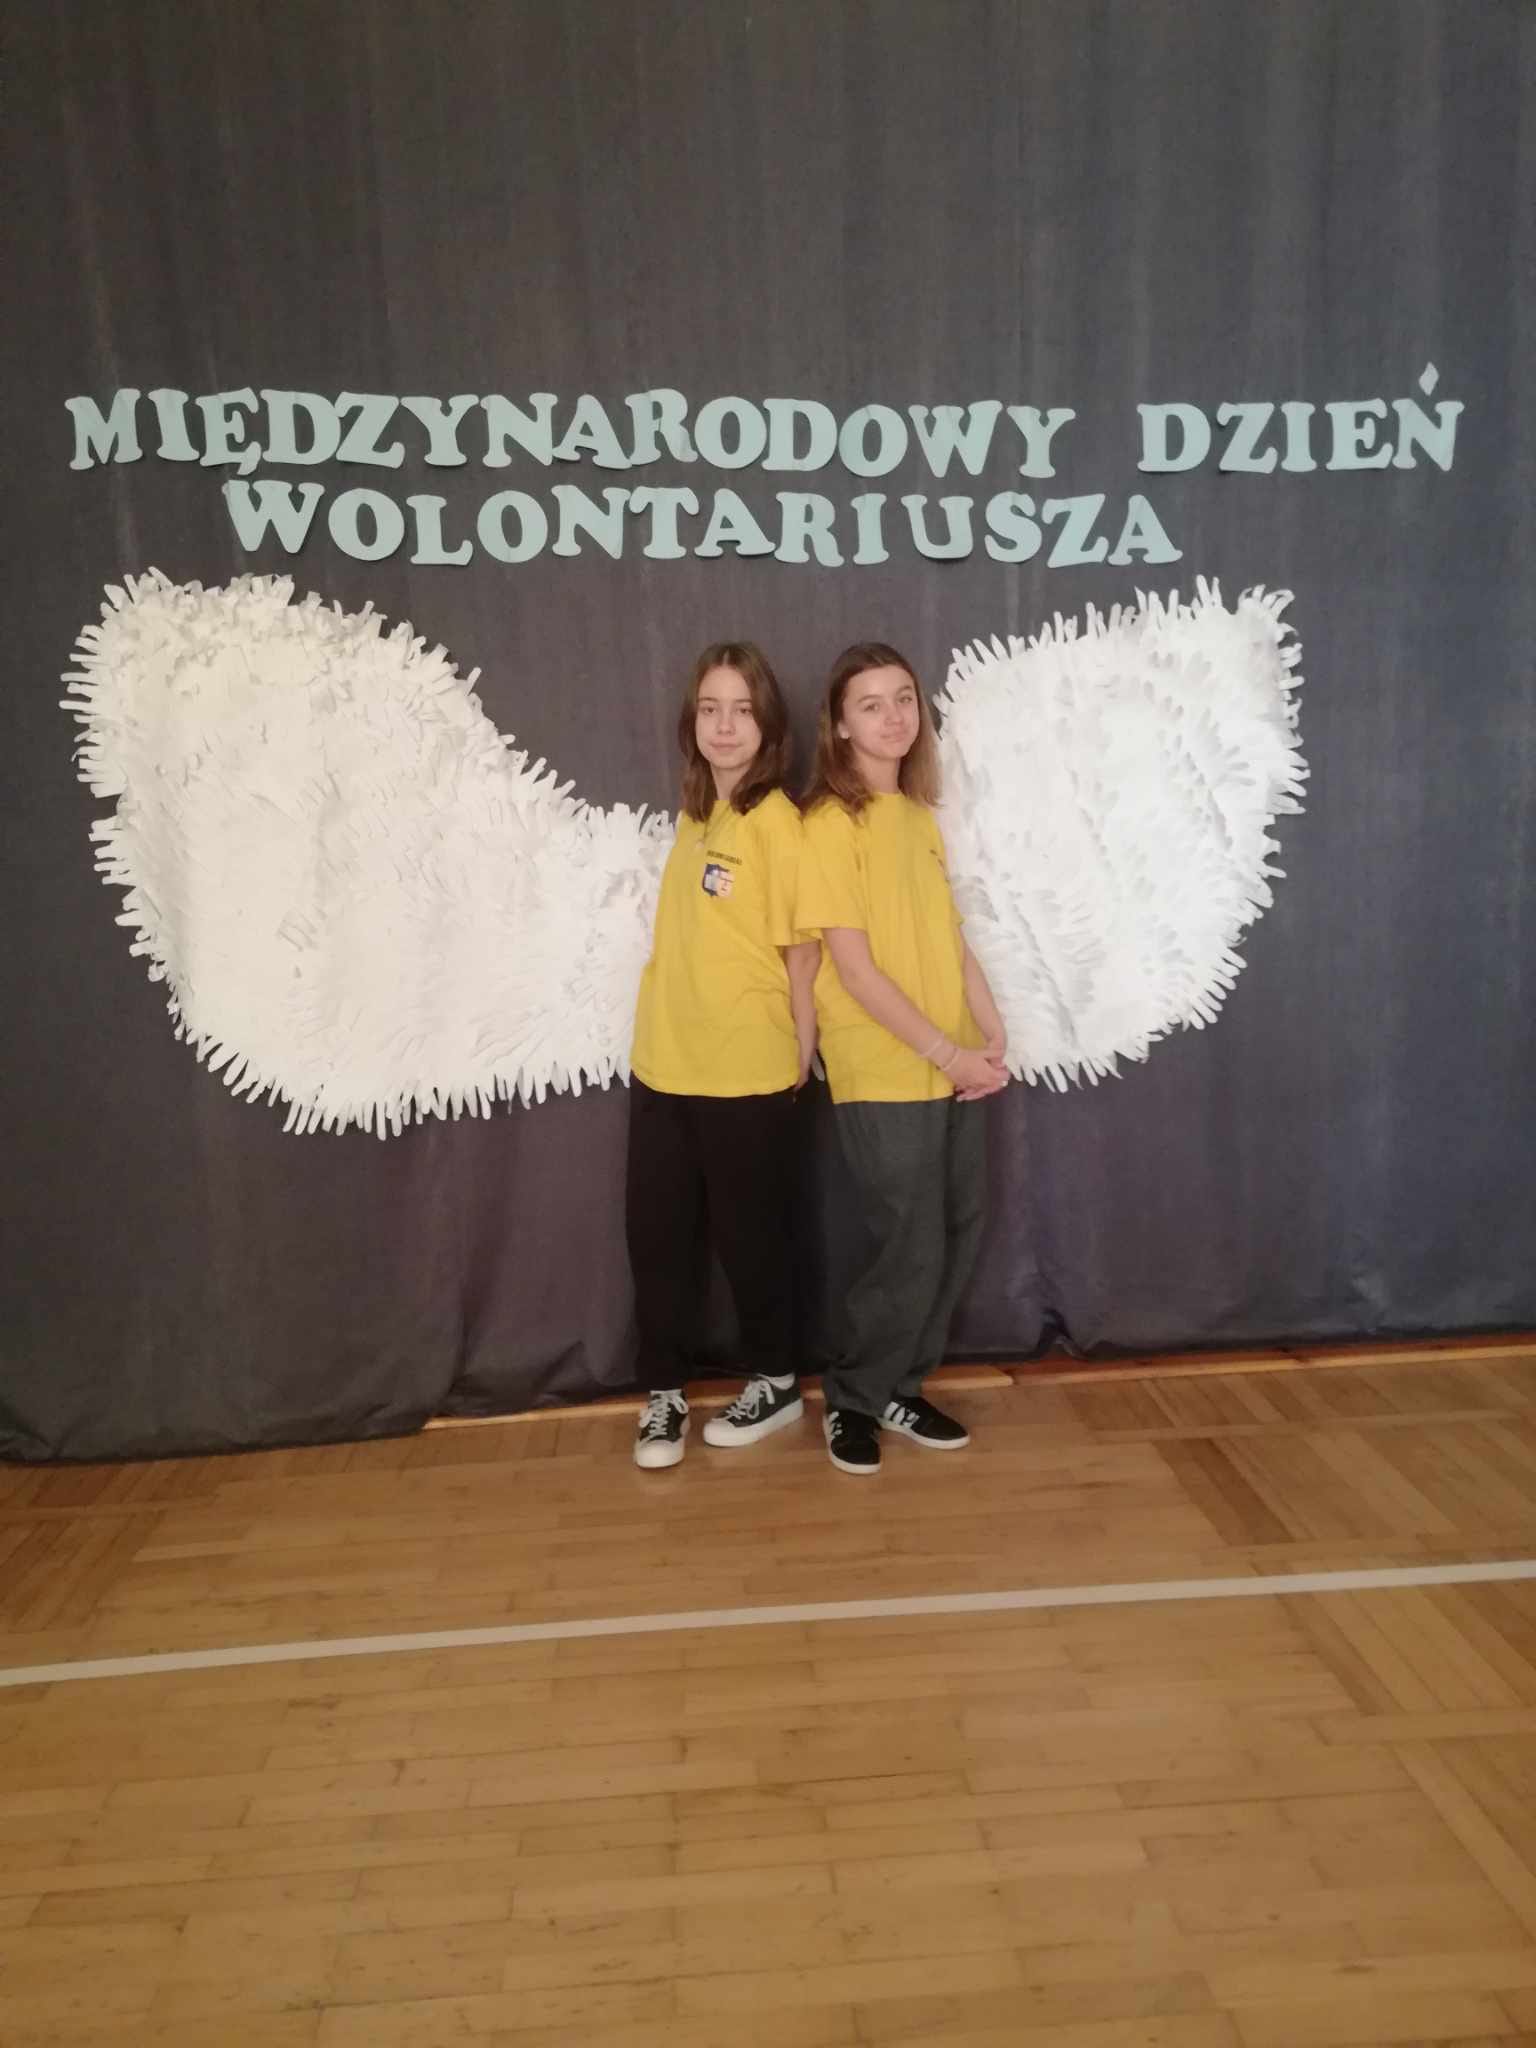 Dziewczynki na tle dekoracji- dużych białych skrzydeł i napisu Międzynarodowy Dzień Wolontariusza